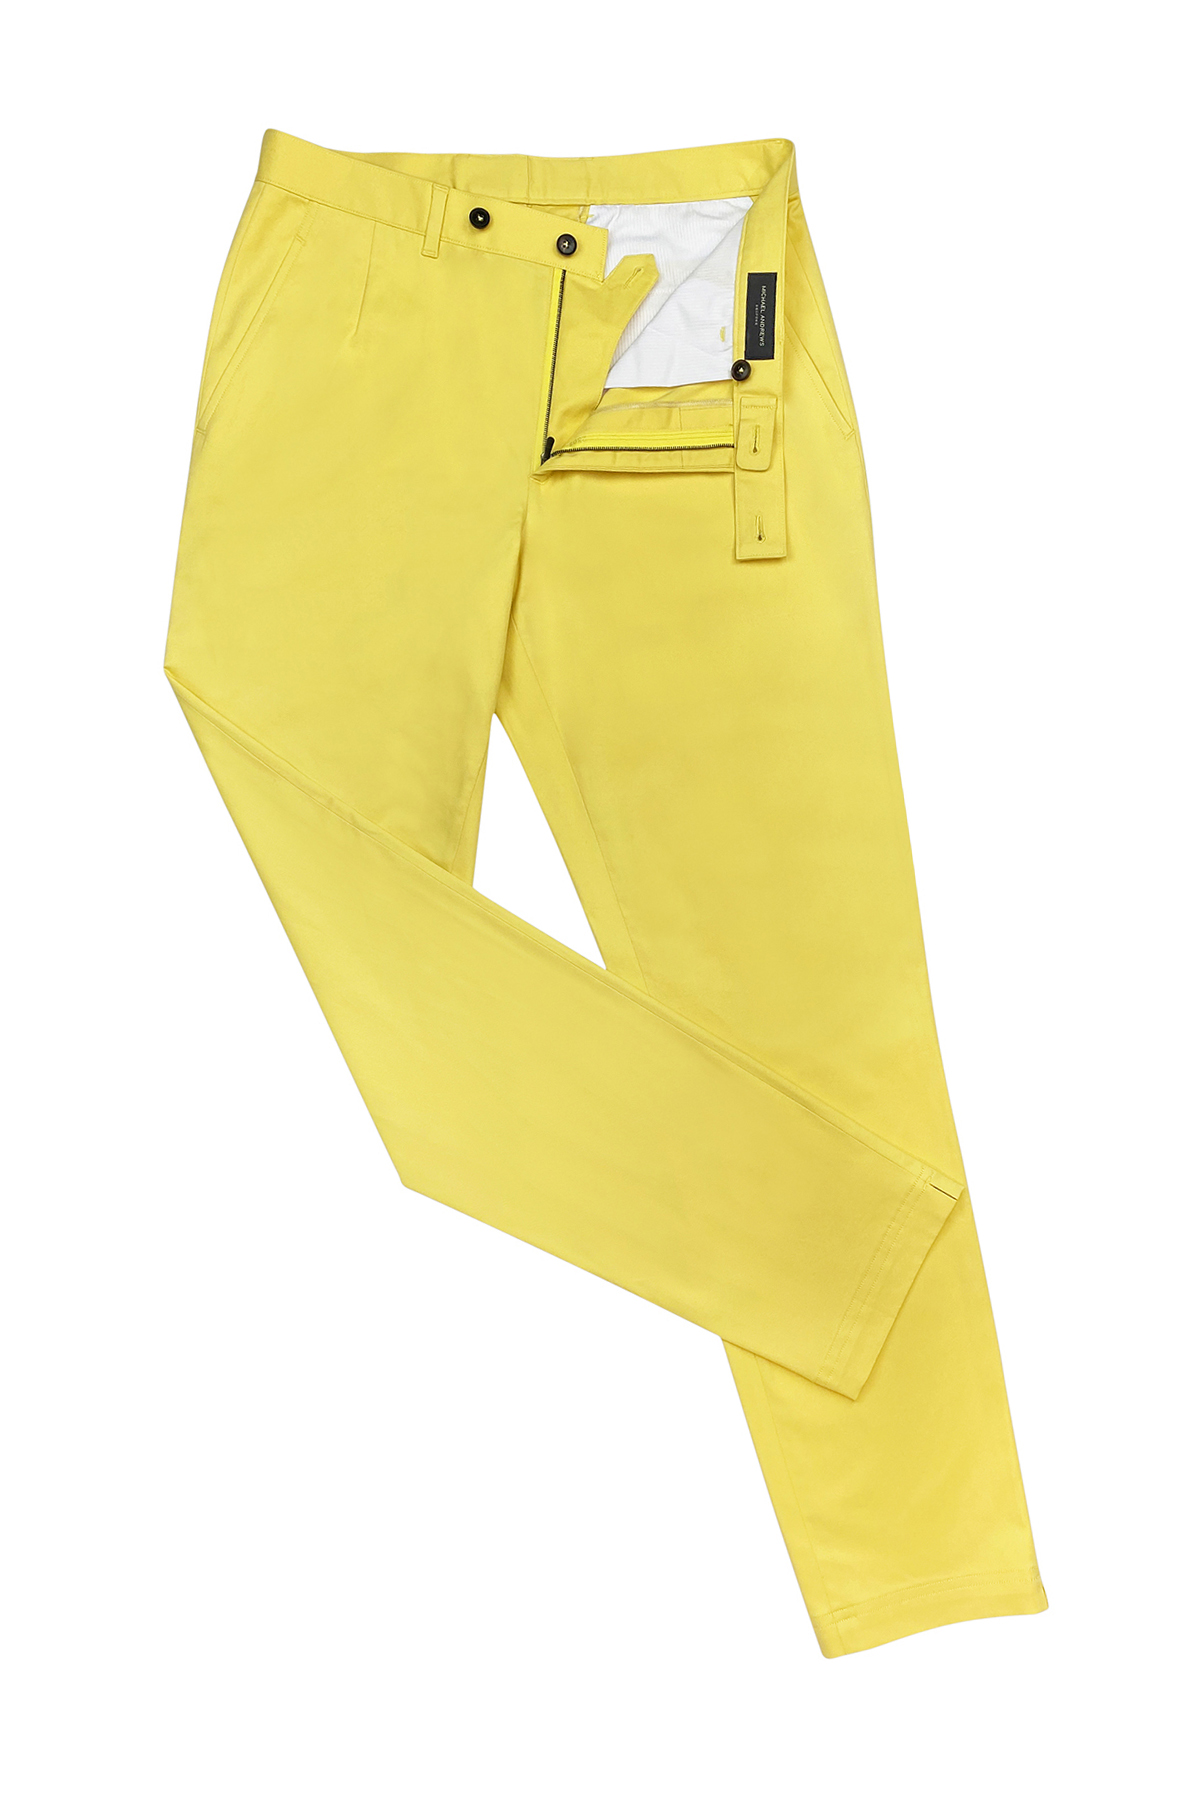 Lemon Stretch Cotton Casual Pants